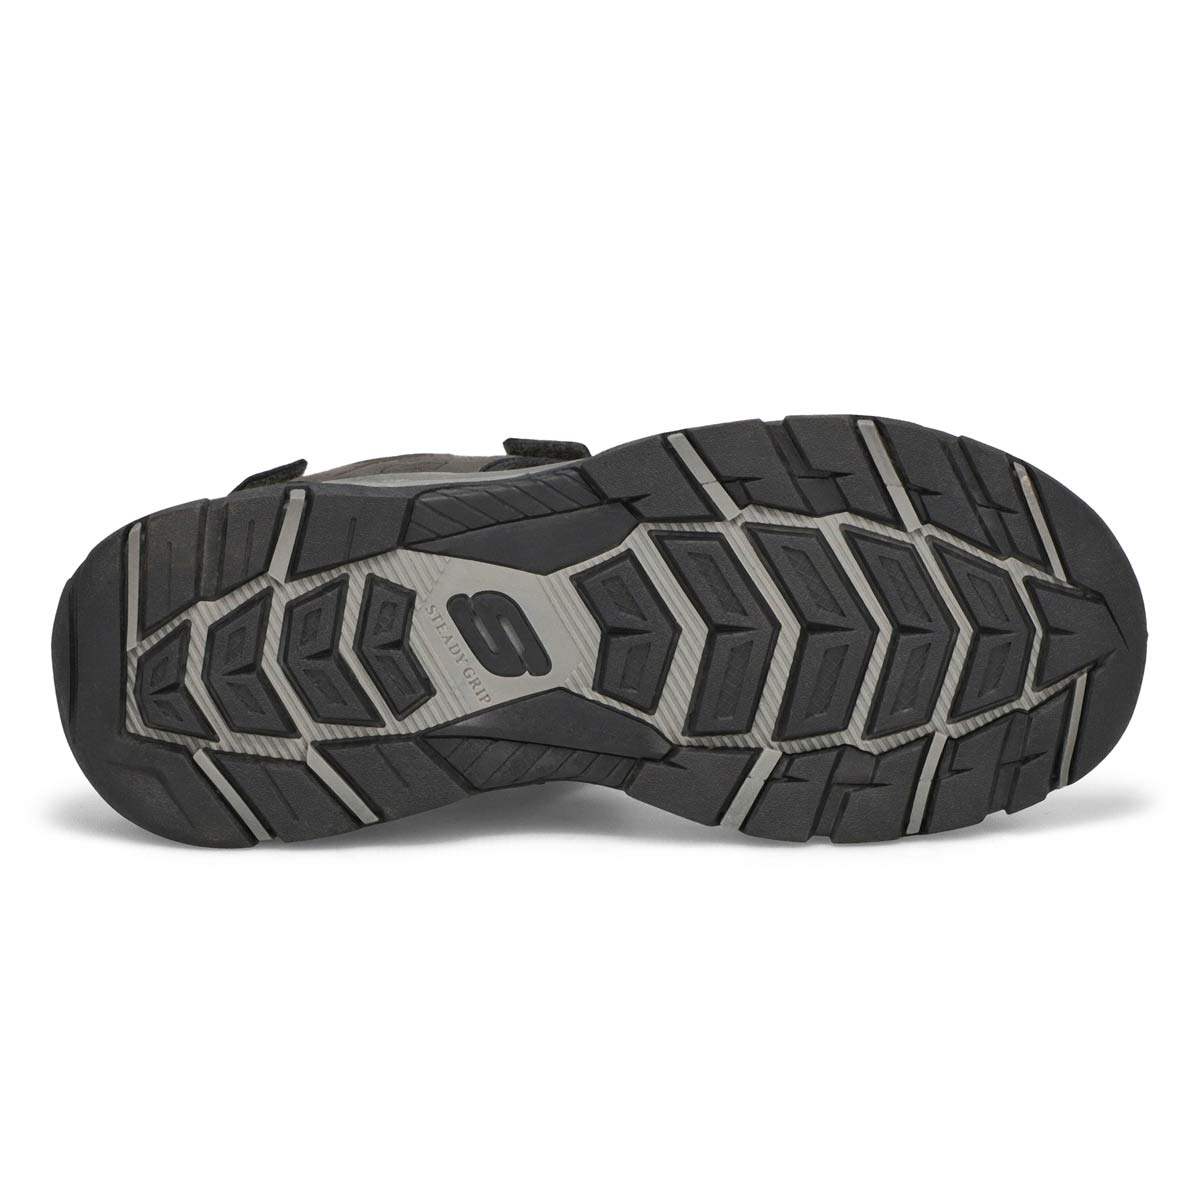 Men's Tresmen Garo Sport Sandals - Charcoal